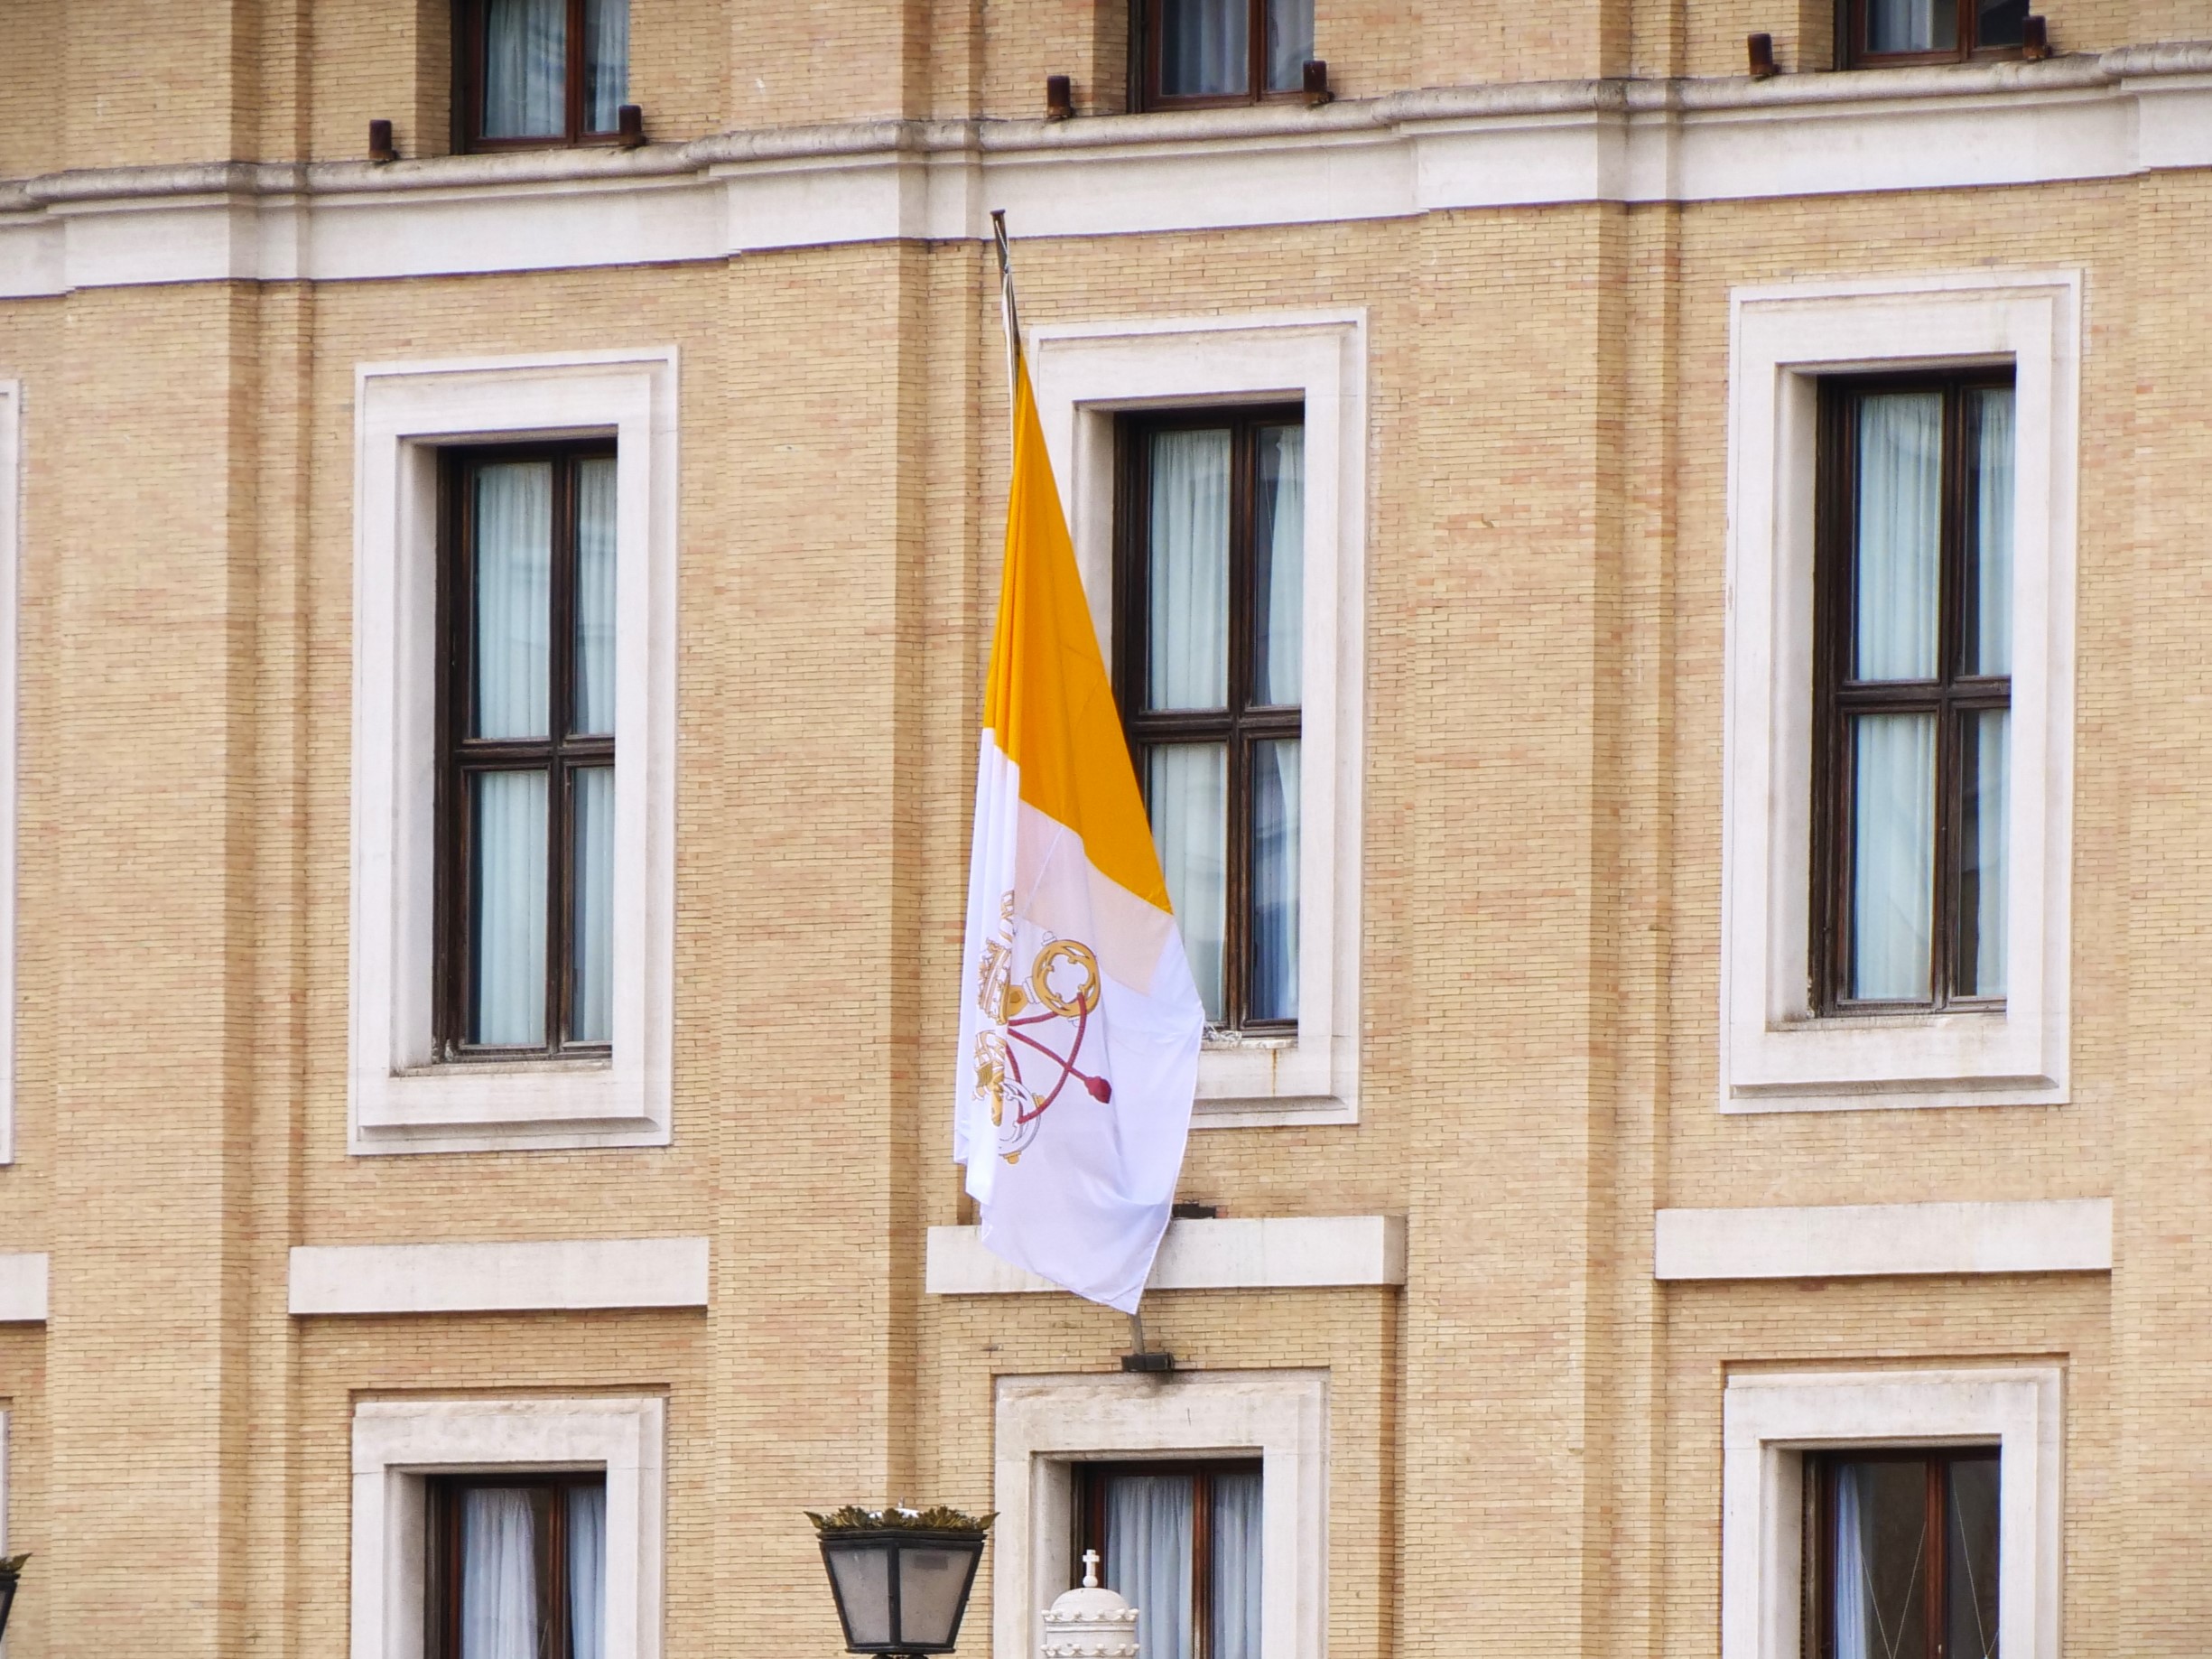 À cause de Wikipédia, le mauvais drapeau du Vatican a été diffusé partout dans le monde